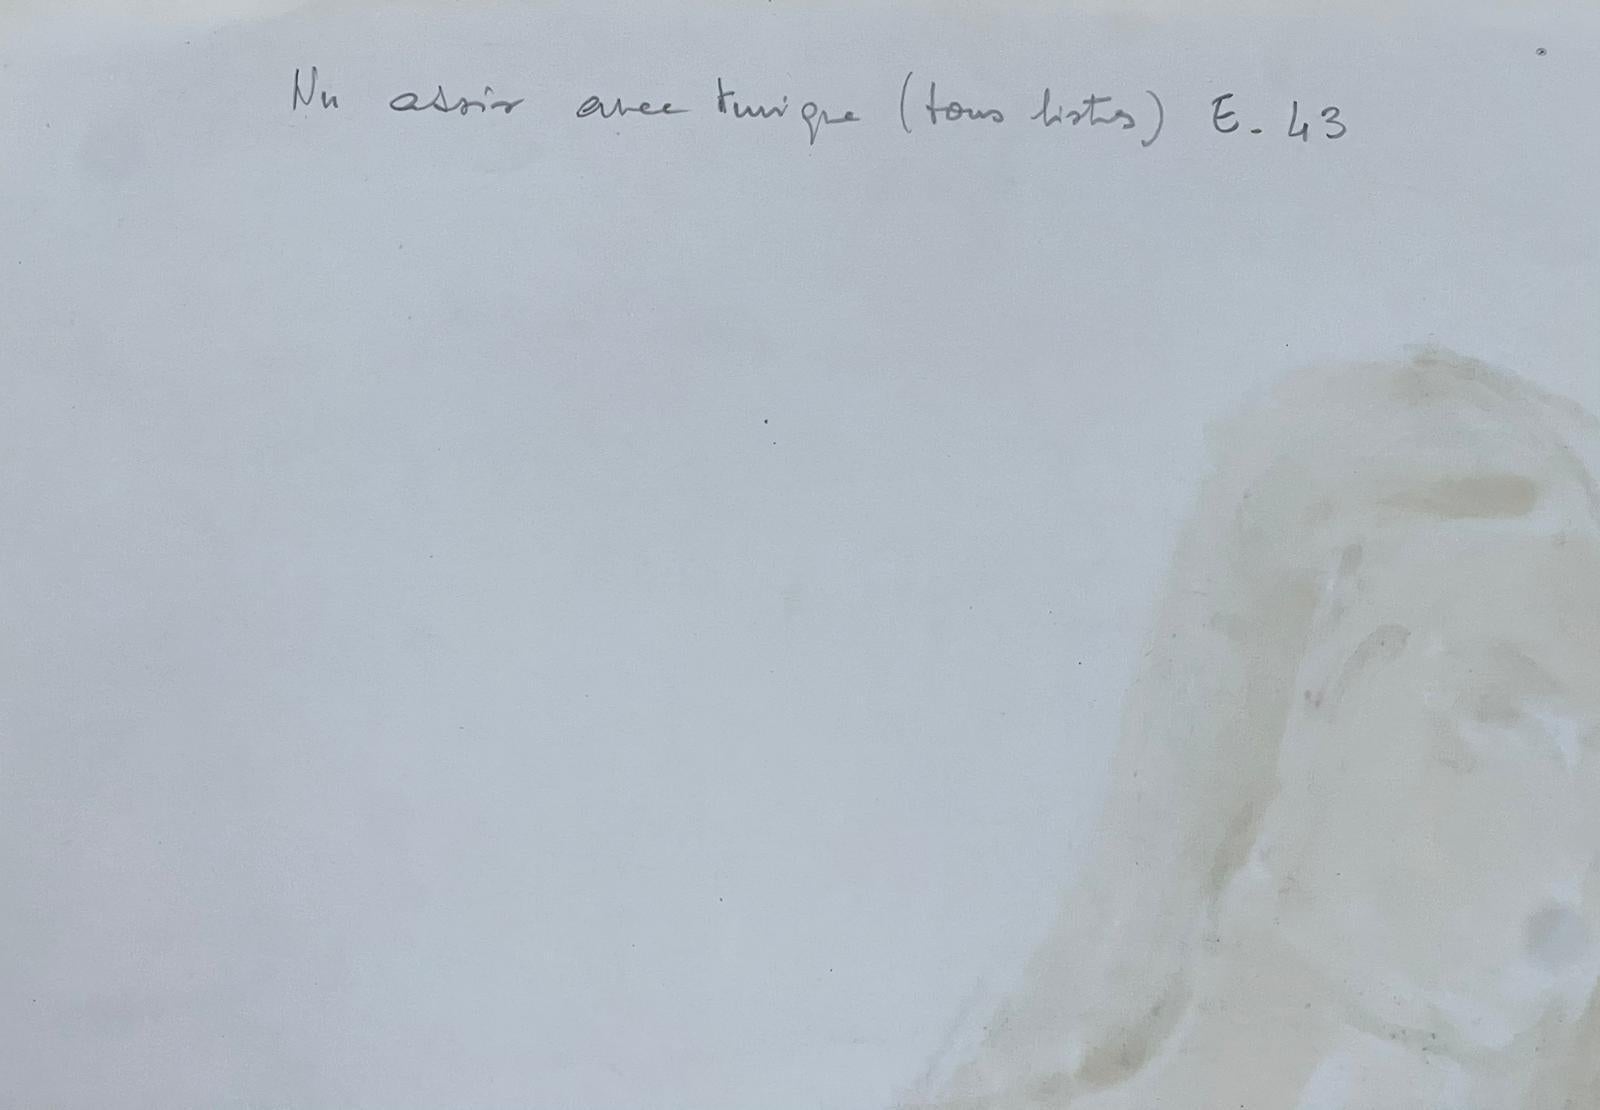 Le modèle Artistics
Femme nue modèle
École française, vers 1970  
peinture à l'huile sur carton, non encadrée
taille : 25.5 x 18 pouces
état : globalement très bon, quelques légères marques à la surface mais rien de préjudiciable à l'attrait et à